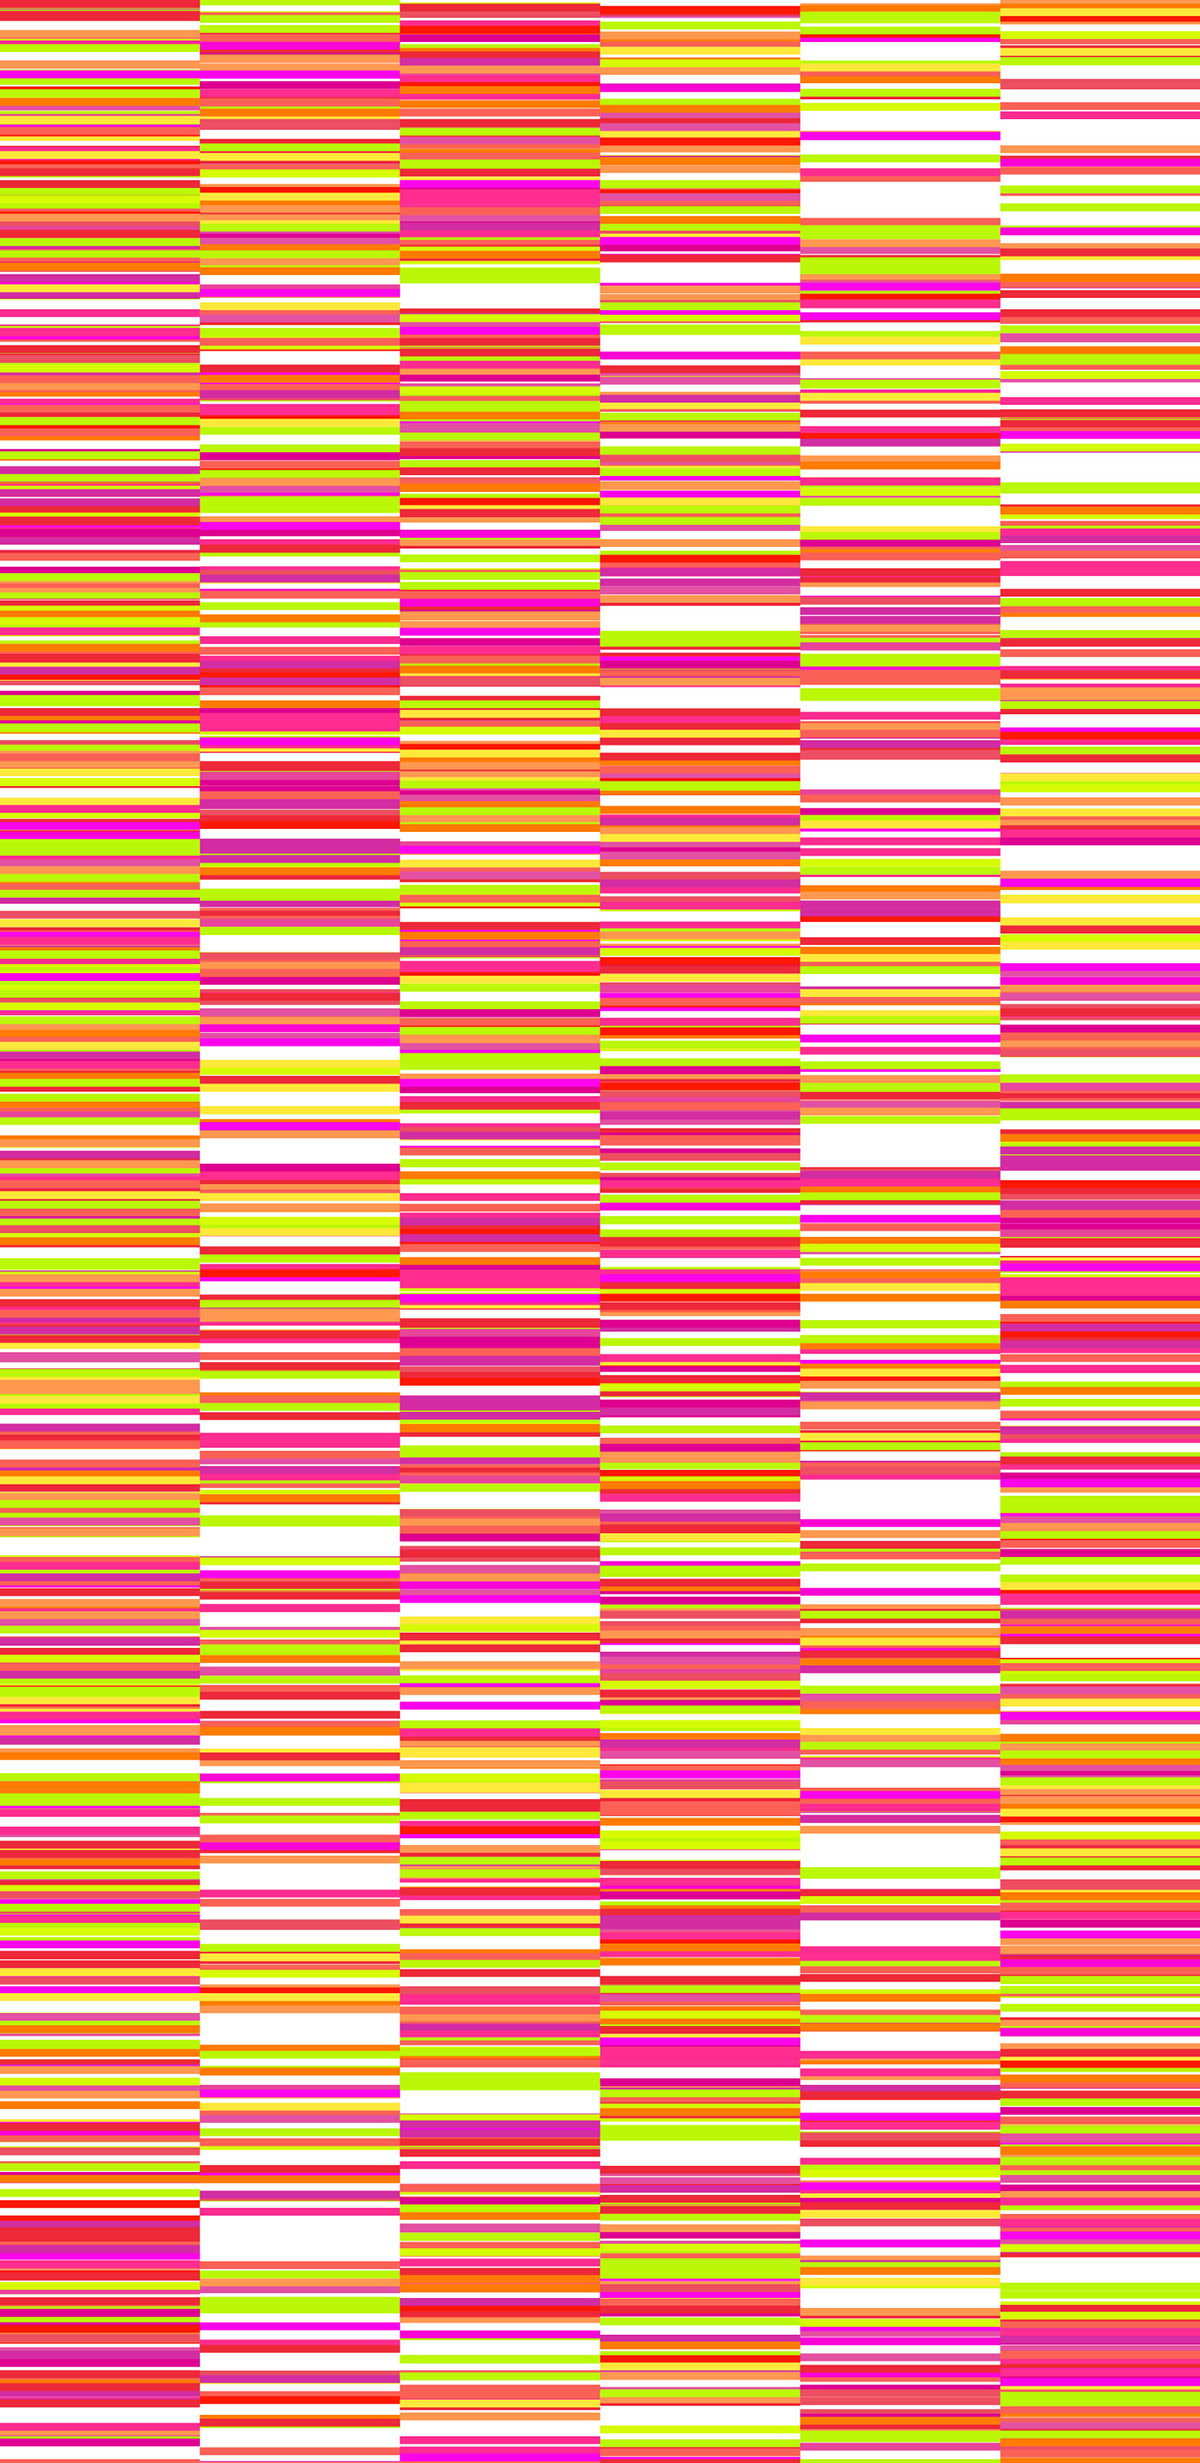 colores colors code codigo rayas lines pattern nice happy alegre colores lindos